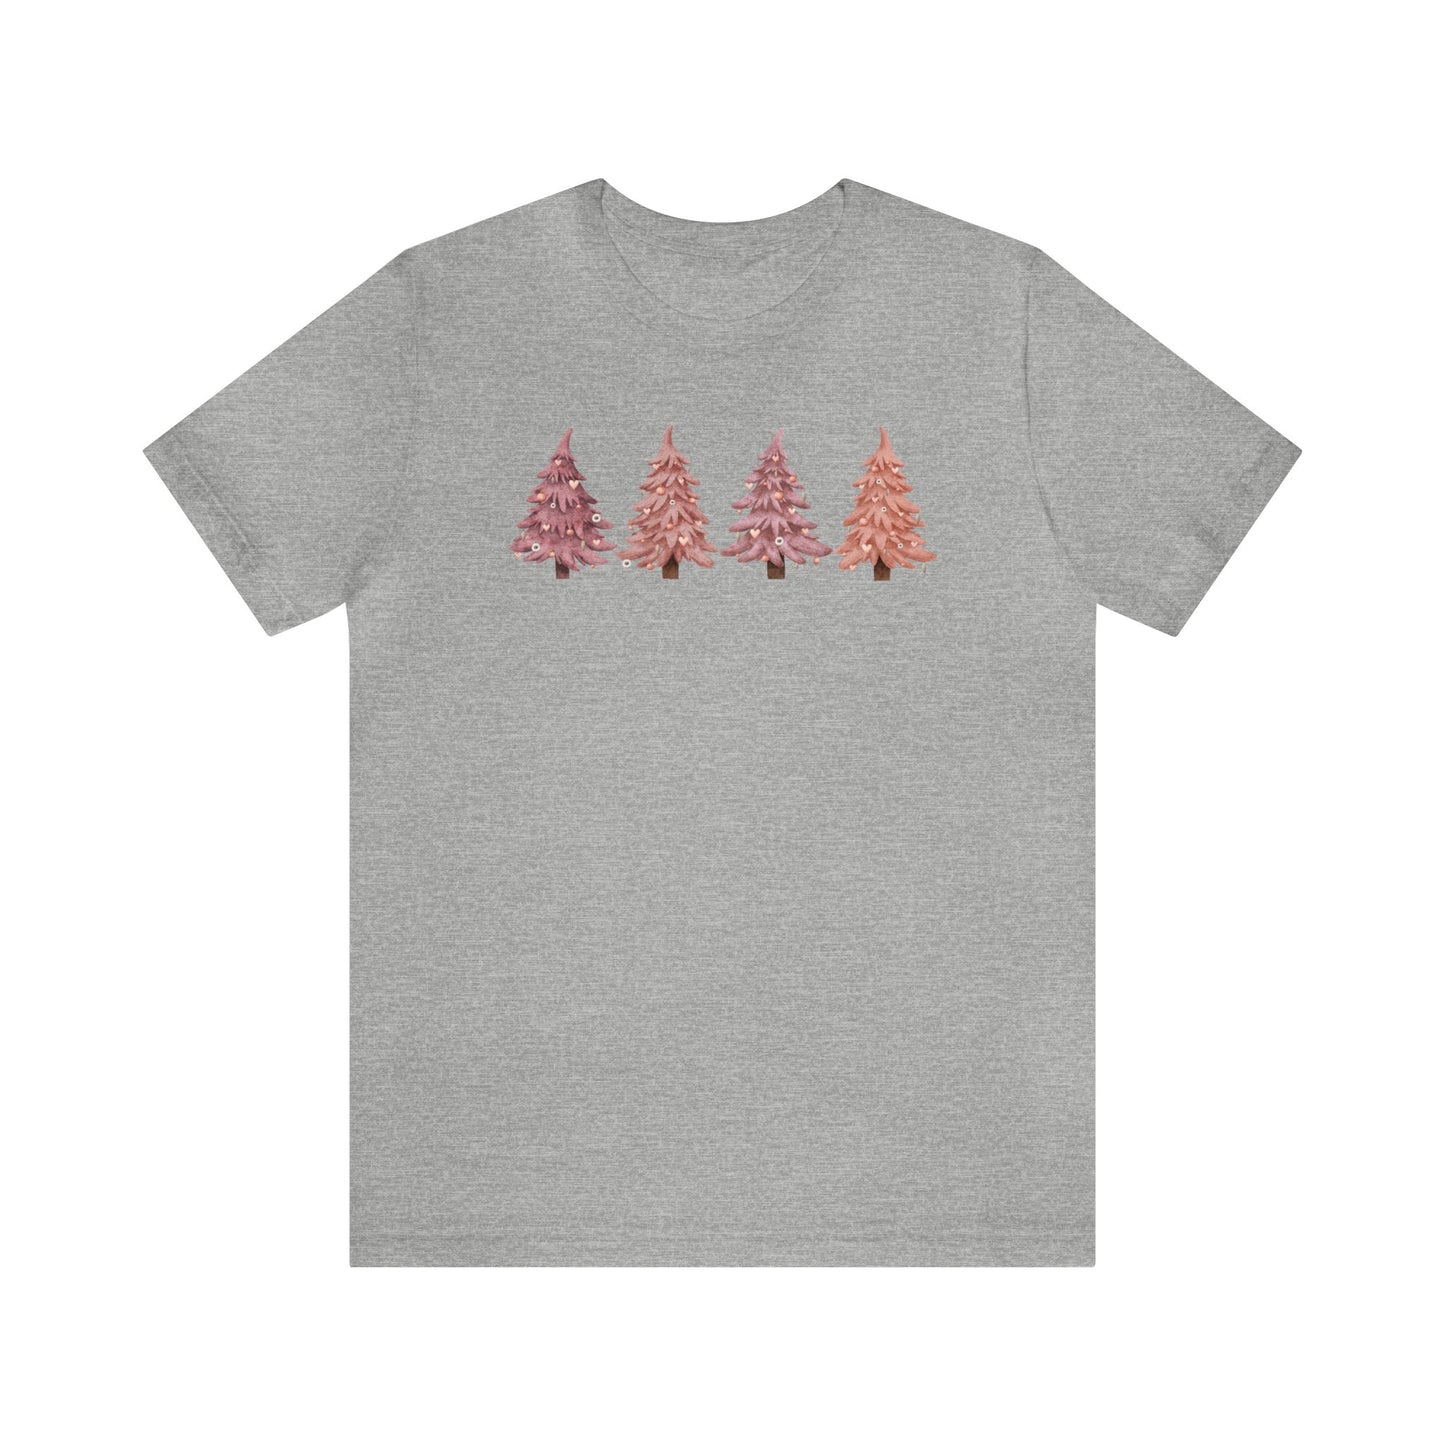 Pink Christmas Trees Christmas Shirt Short Sleeve Tee